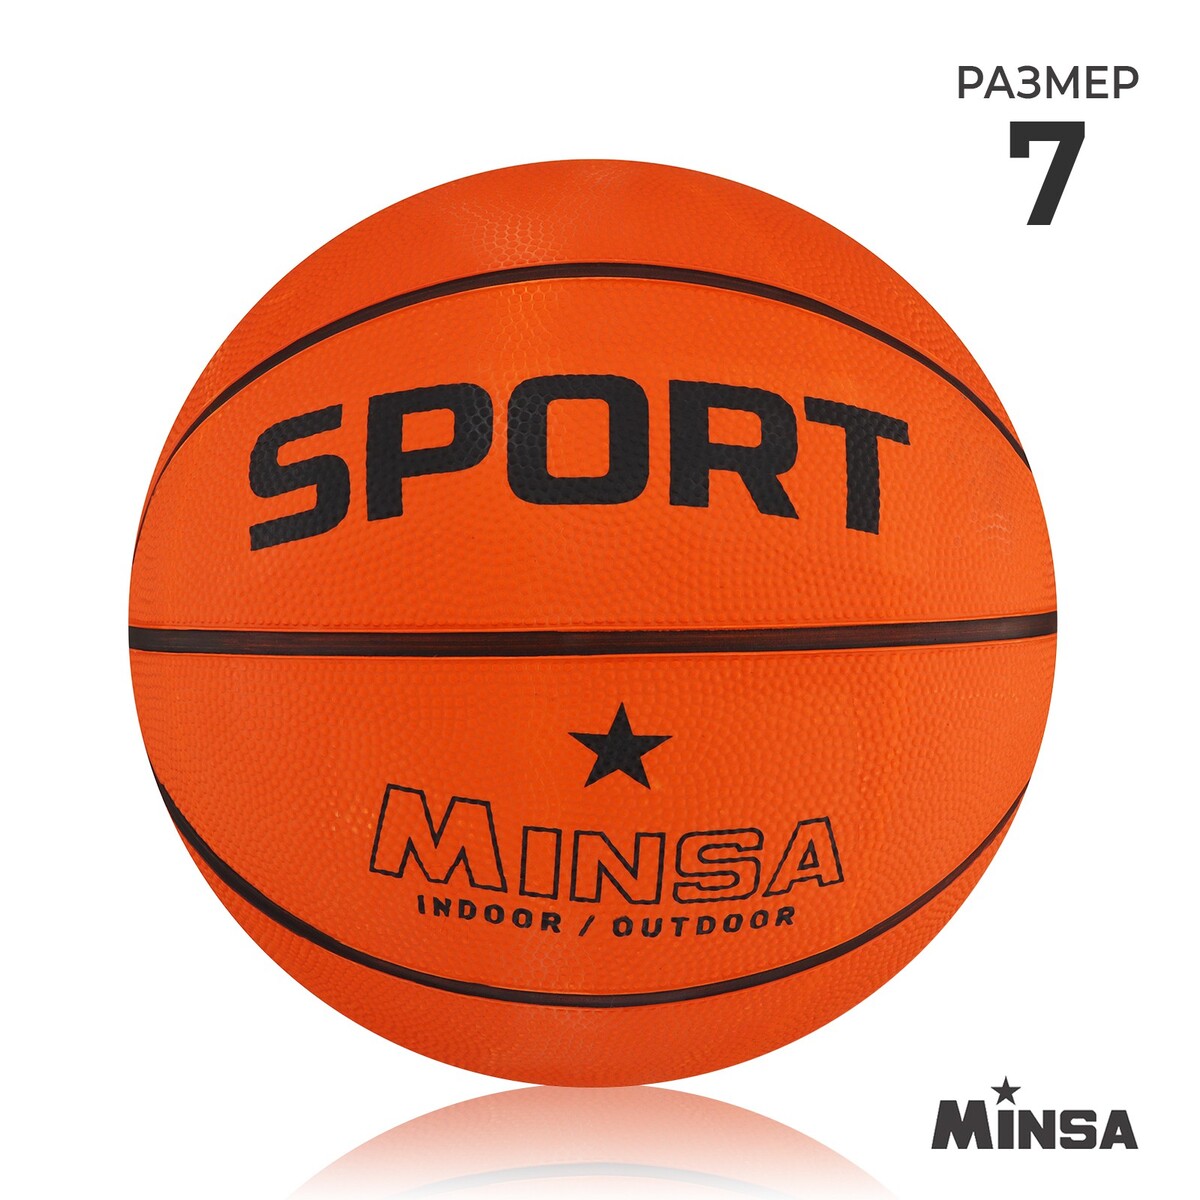 Мяч баскетбольный minsa sport, пвх, клееный, 8 панелей, р. 7 мяч баскетбольный minsa air power пвх клееный 8 панелей р 7